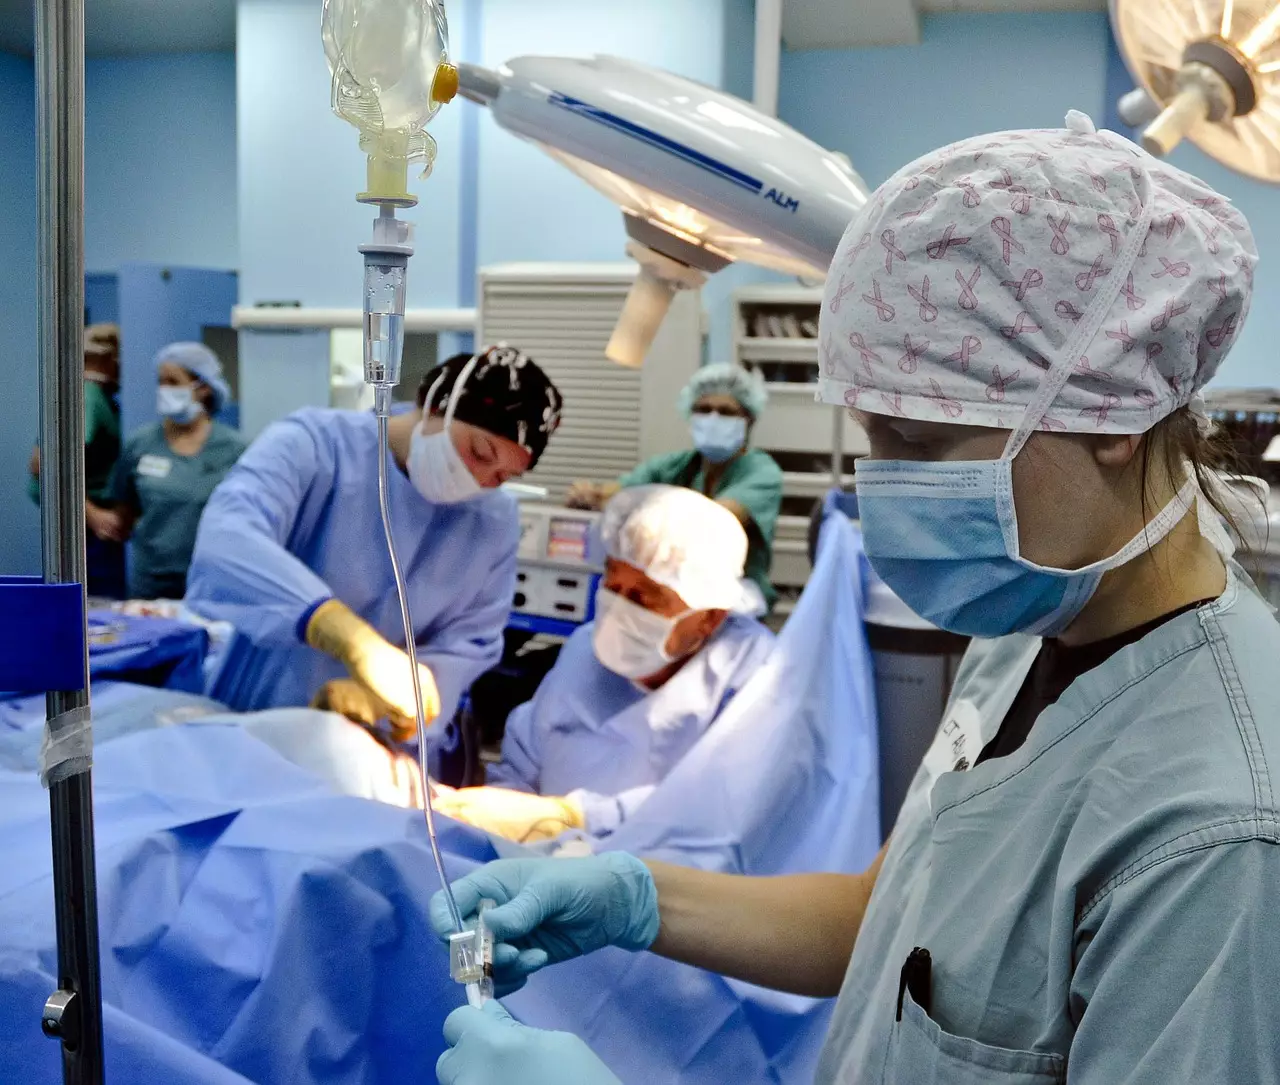 Как в Украине происходит трансплантация